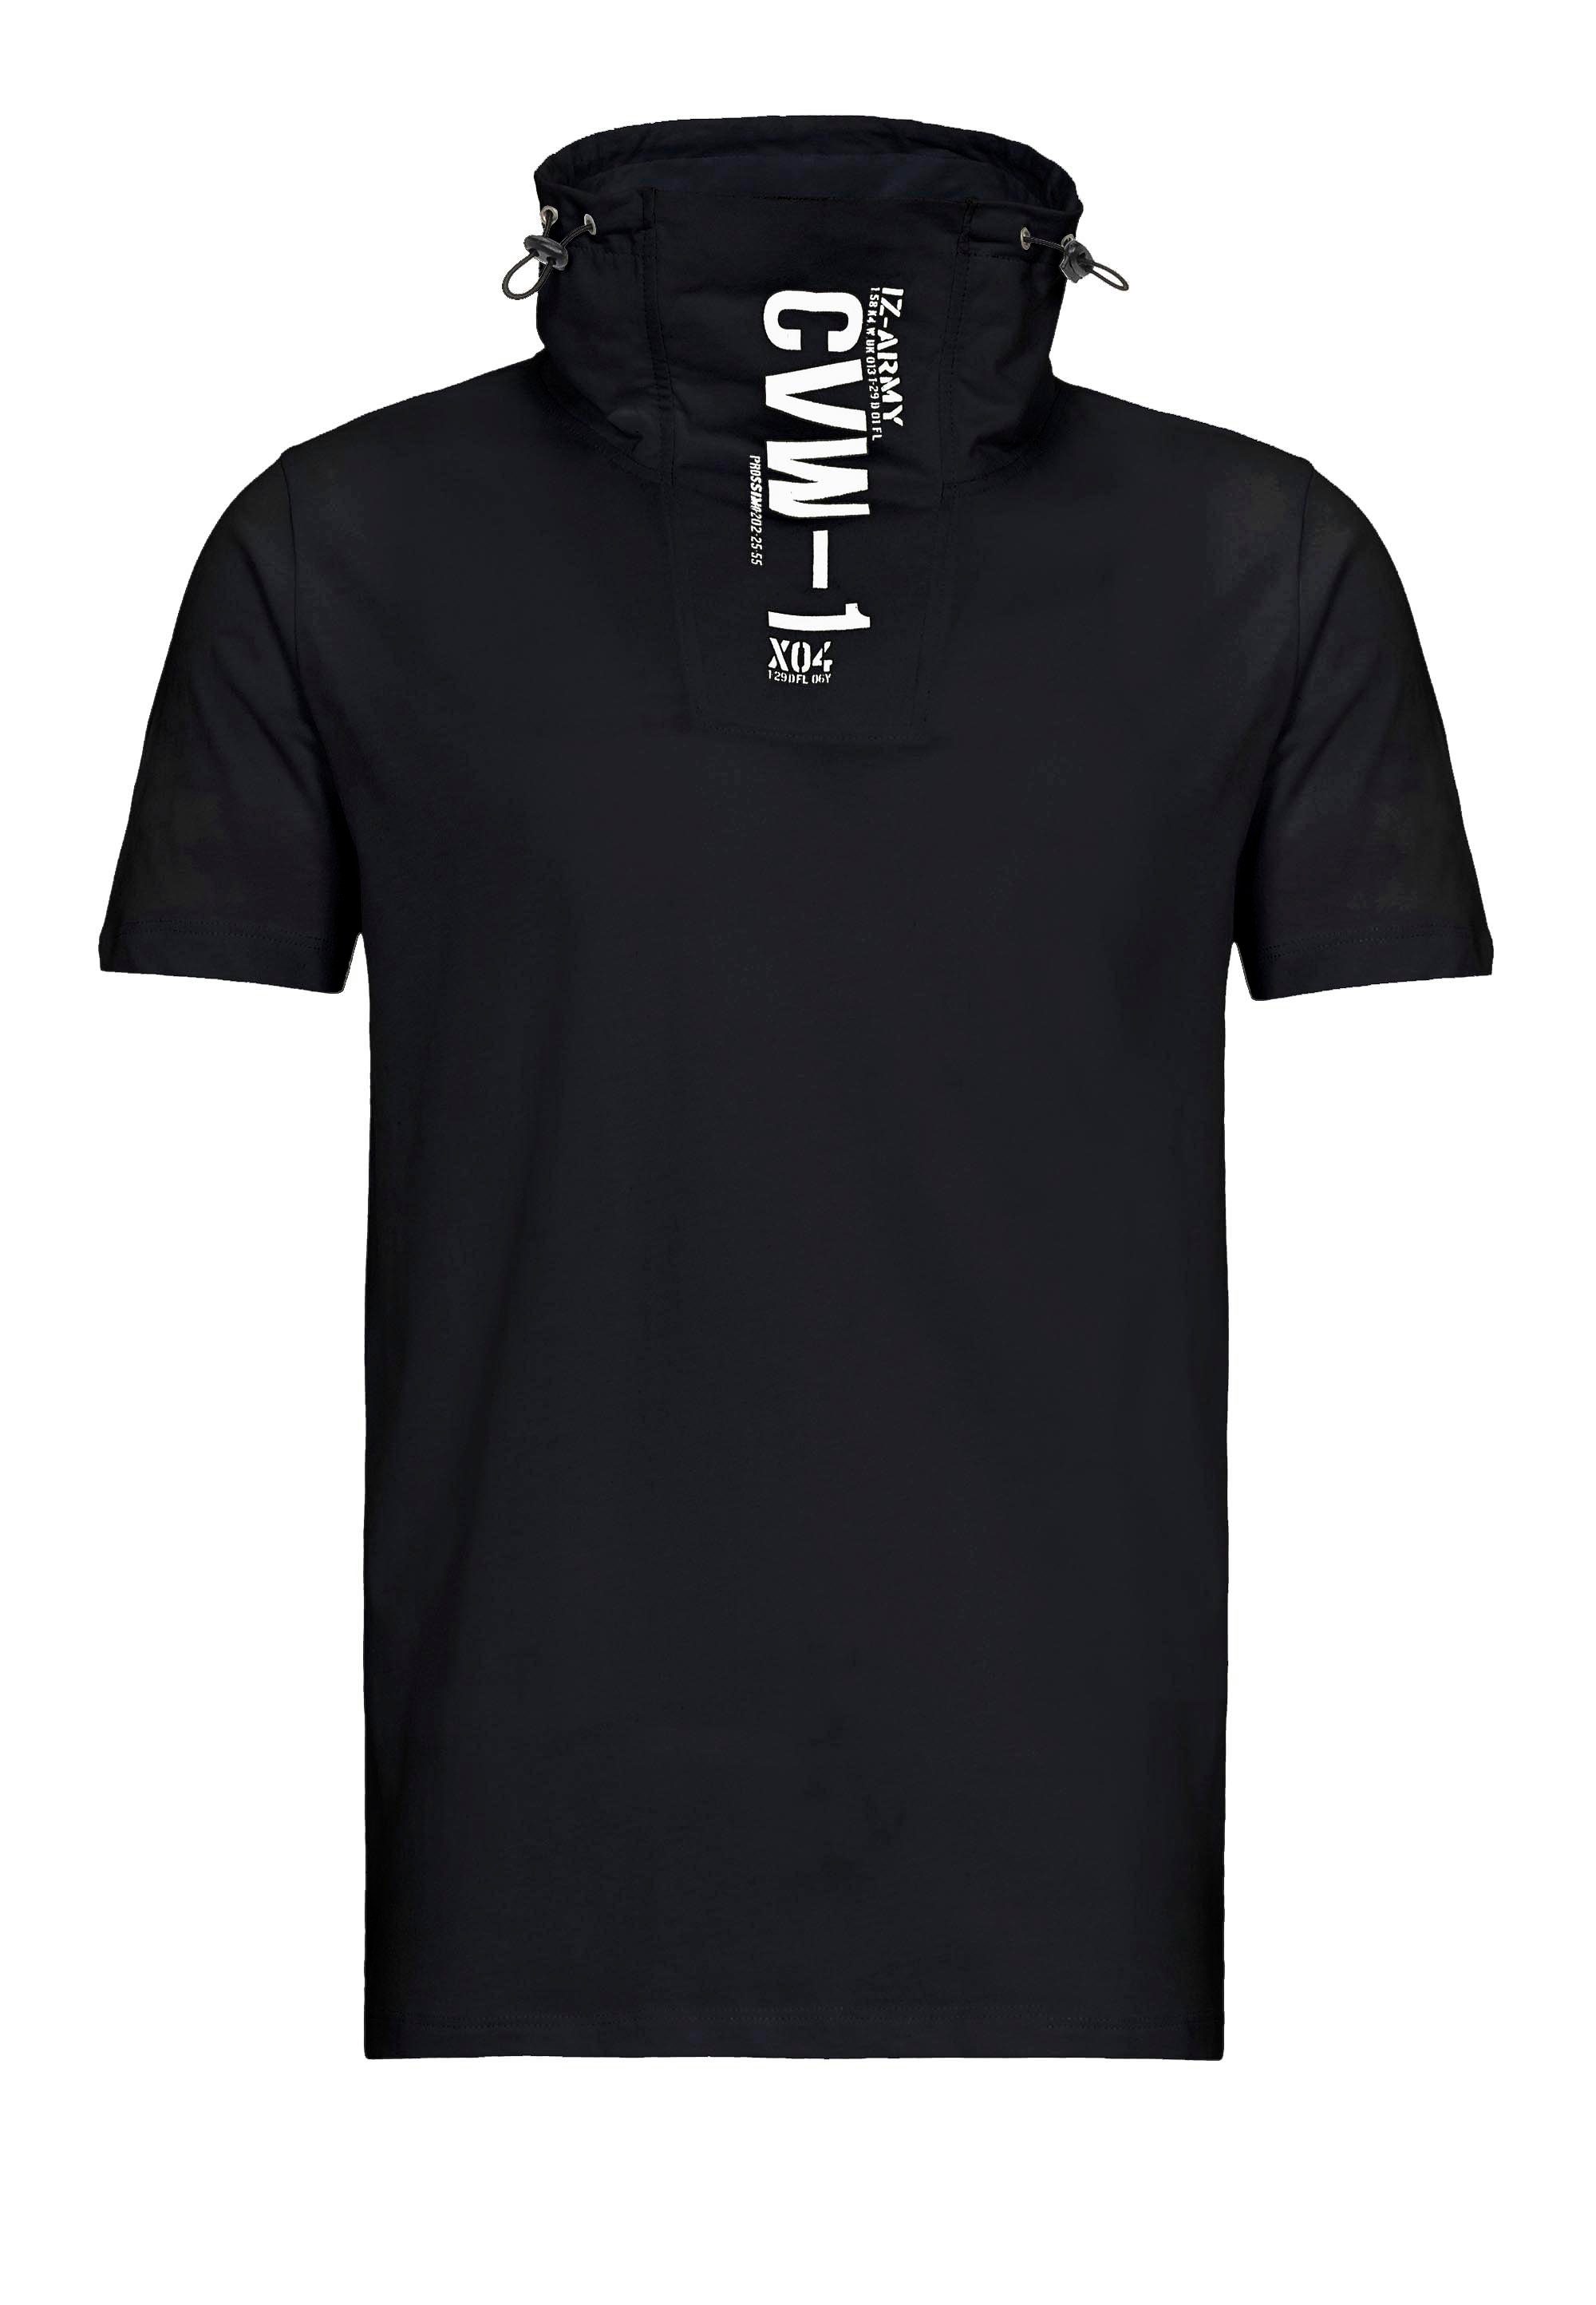 Kragen Sunnyvale mit T-Shirt schwarz RedBridge hohem